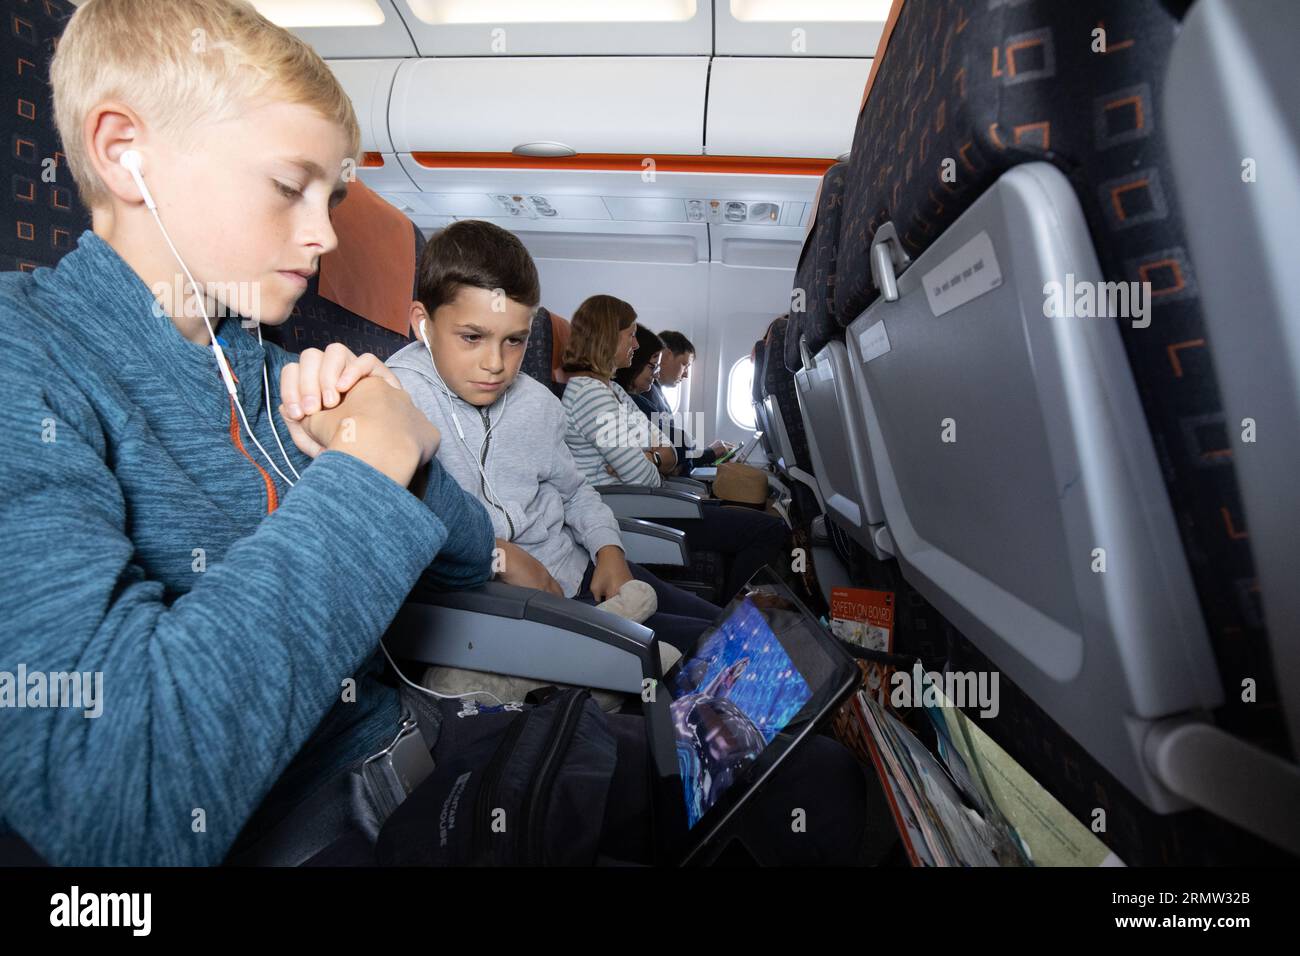 Junge Familie auf dem iPad, die sich einen Film anschaut, während sie mit der EasyJet Low-Cost-Fluggesellschaft fliegt Stockfoto